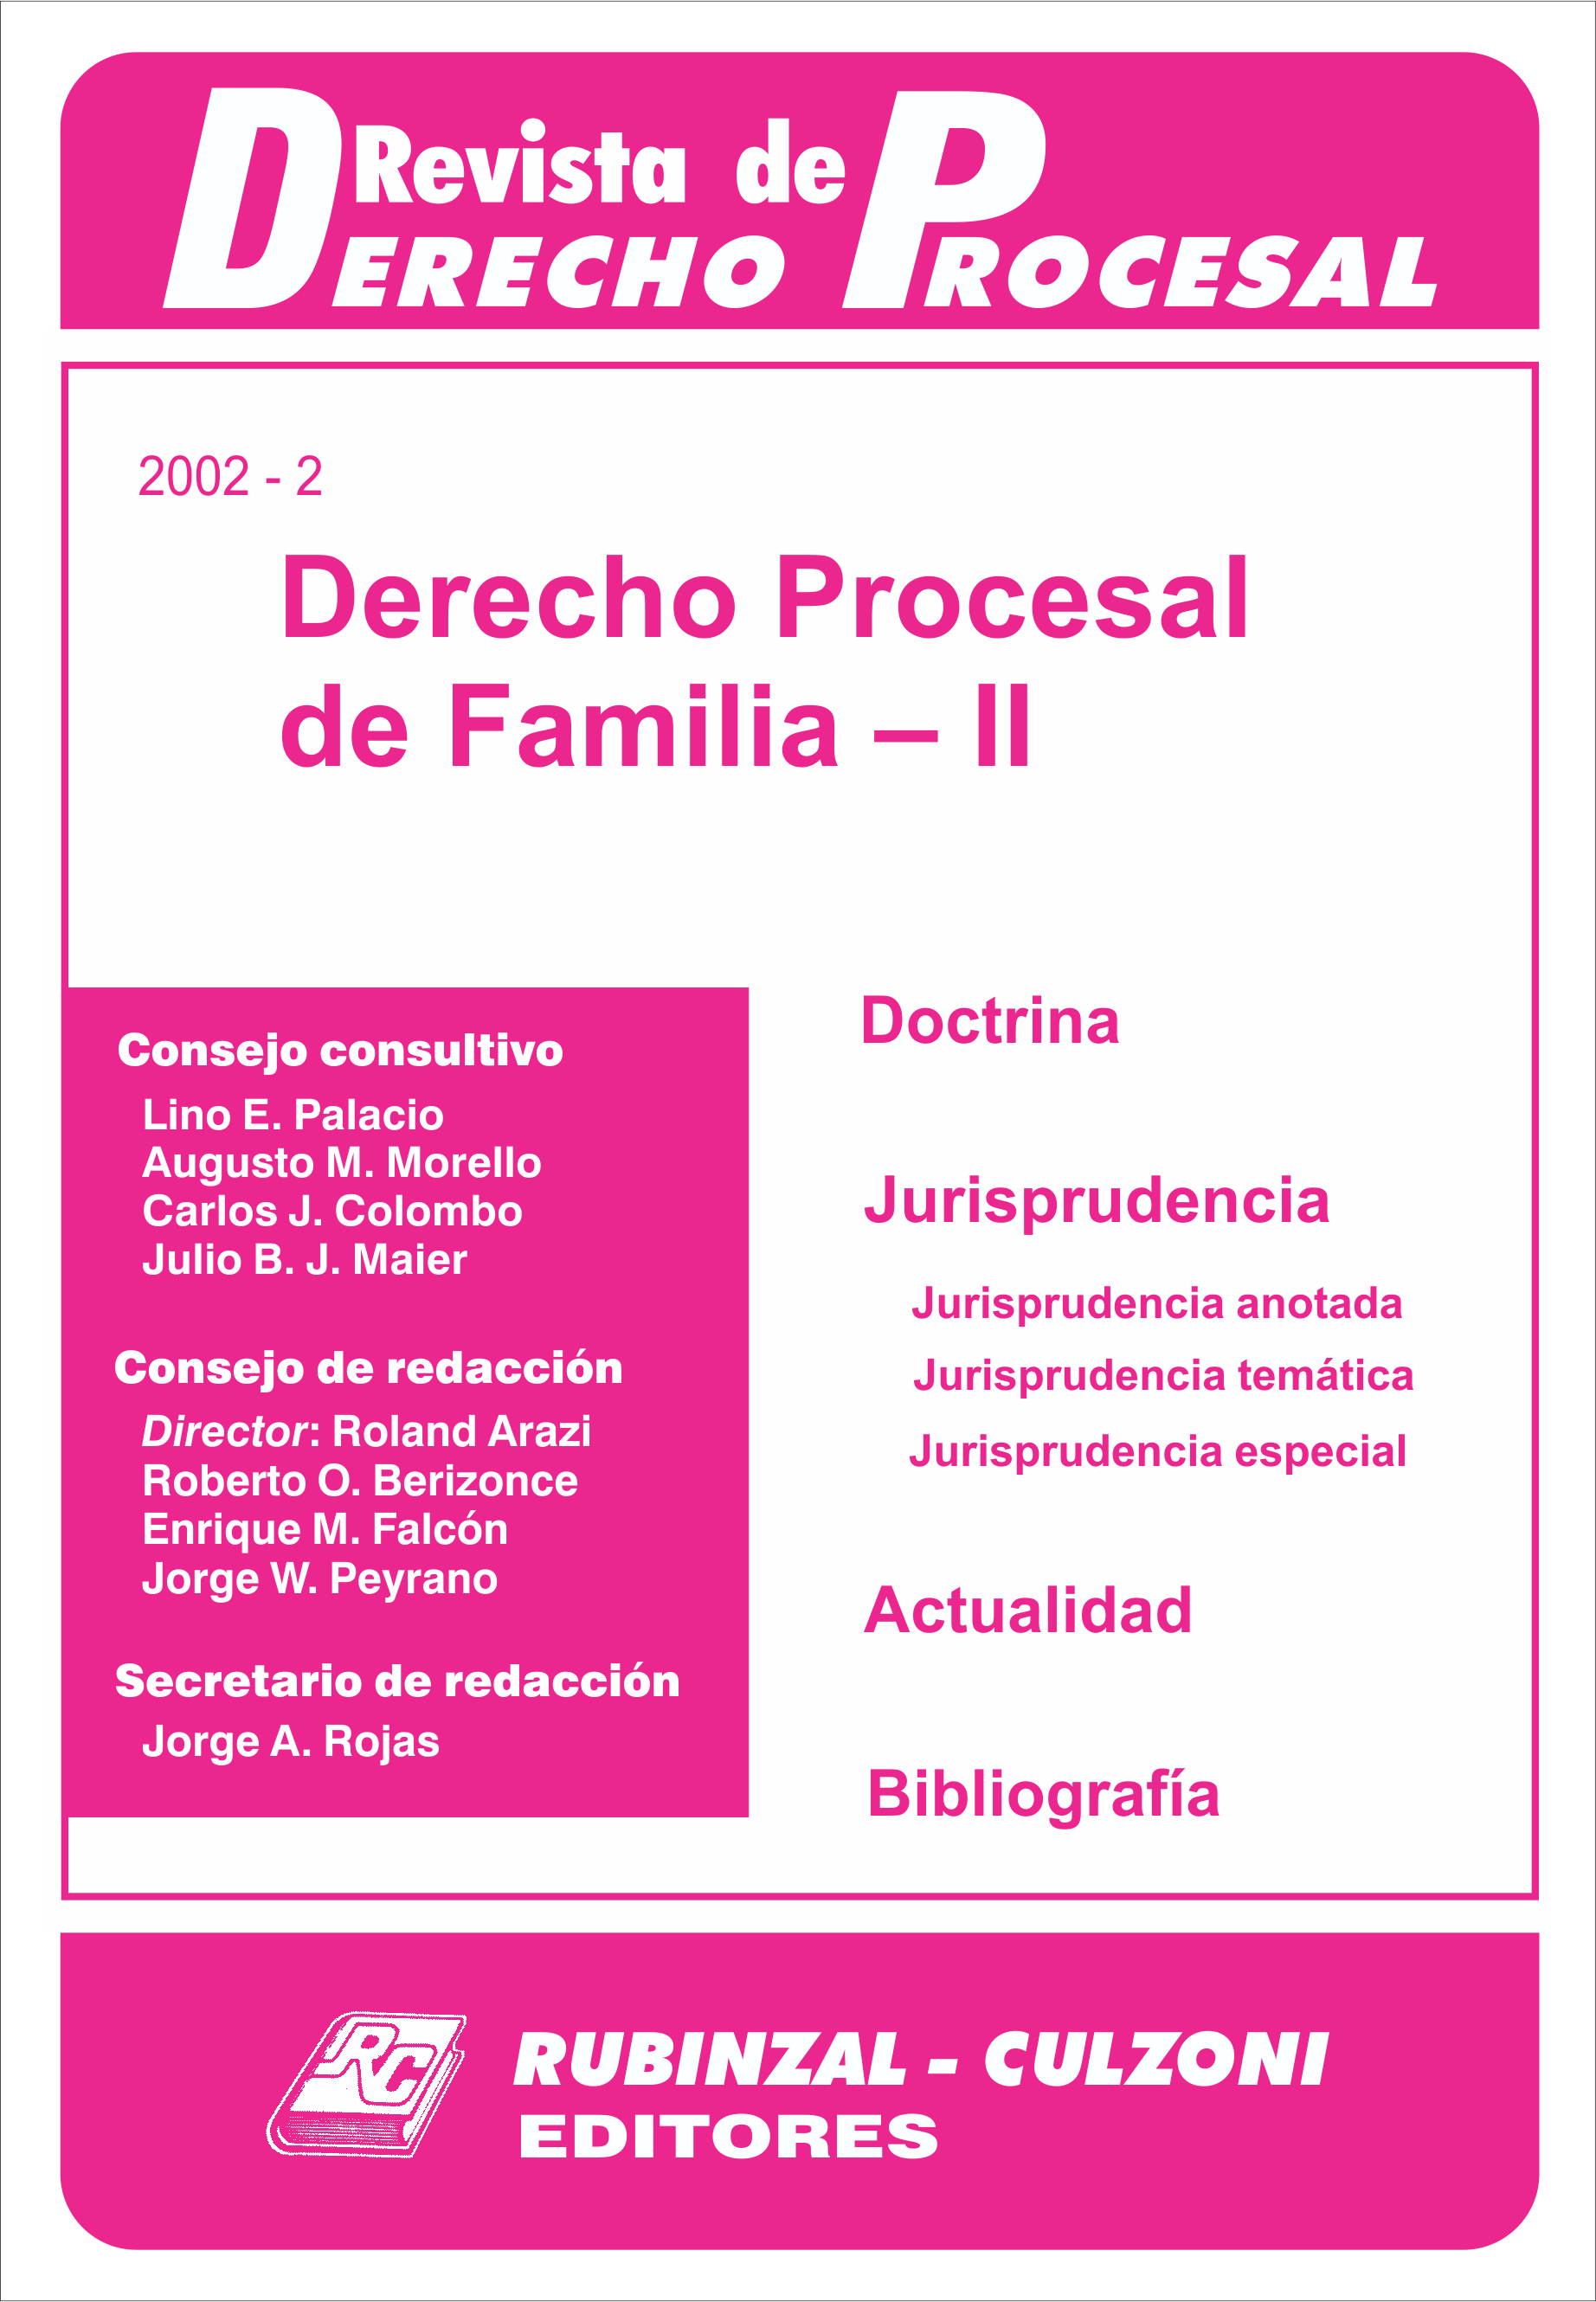 Revista de Derecho Procesal - Derecho Procesal de Familia - II